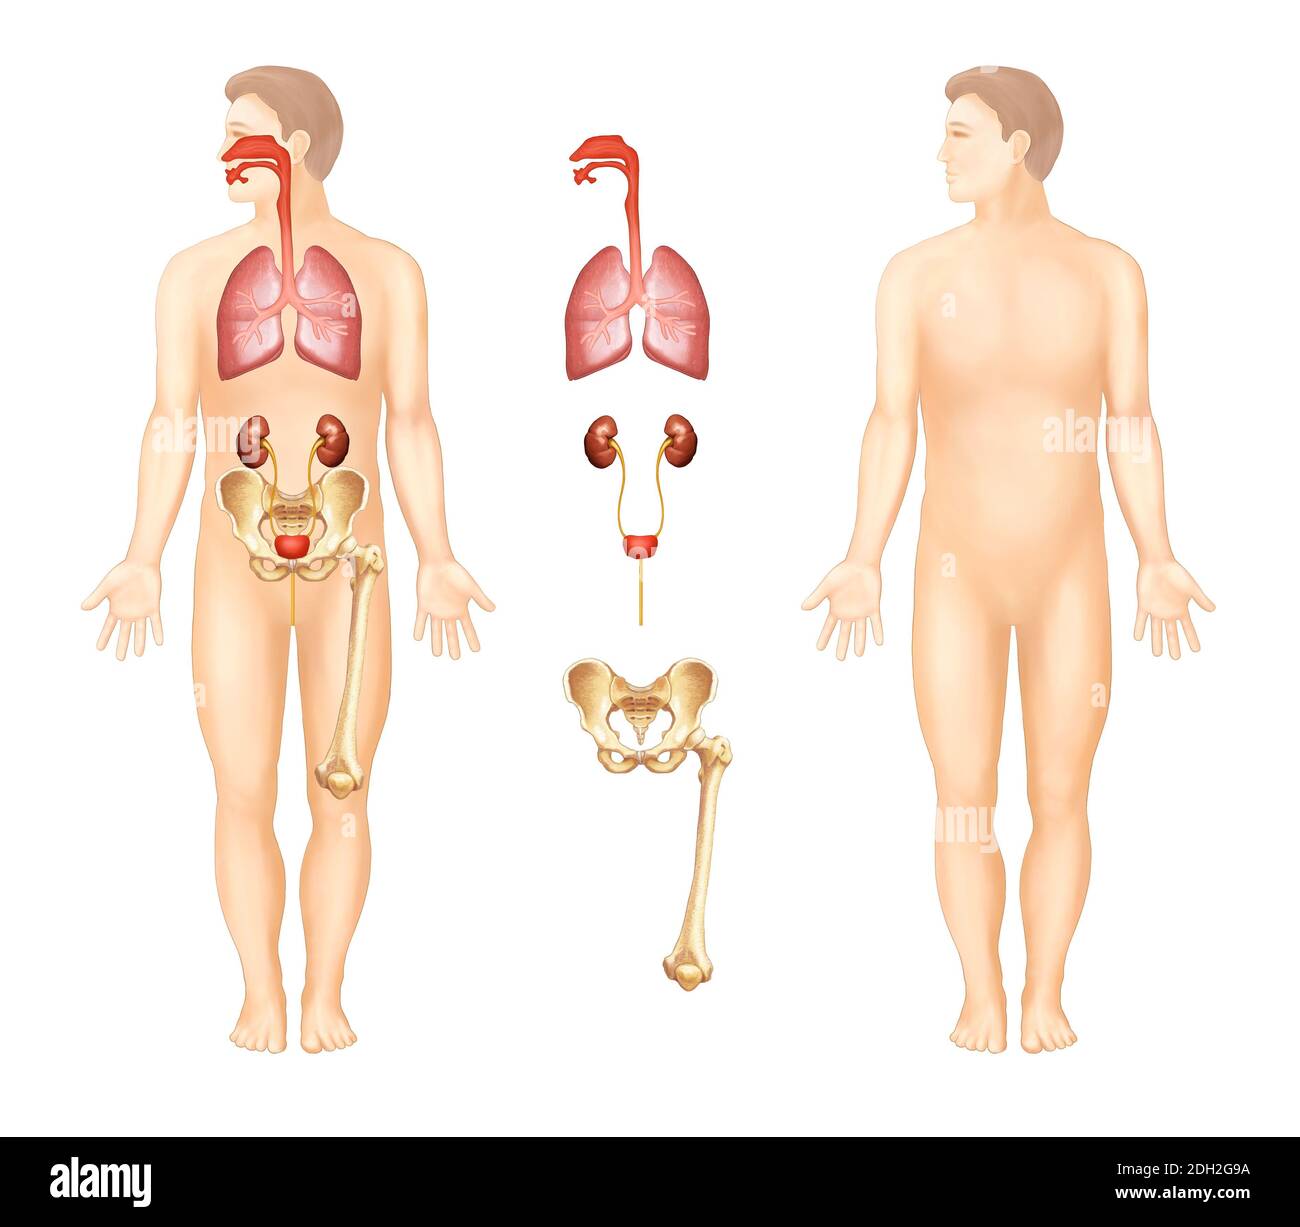 illustrazioni anatomiche di organi umani Foto Stock